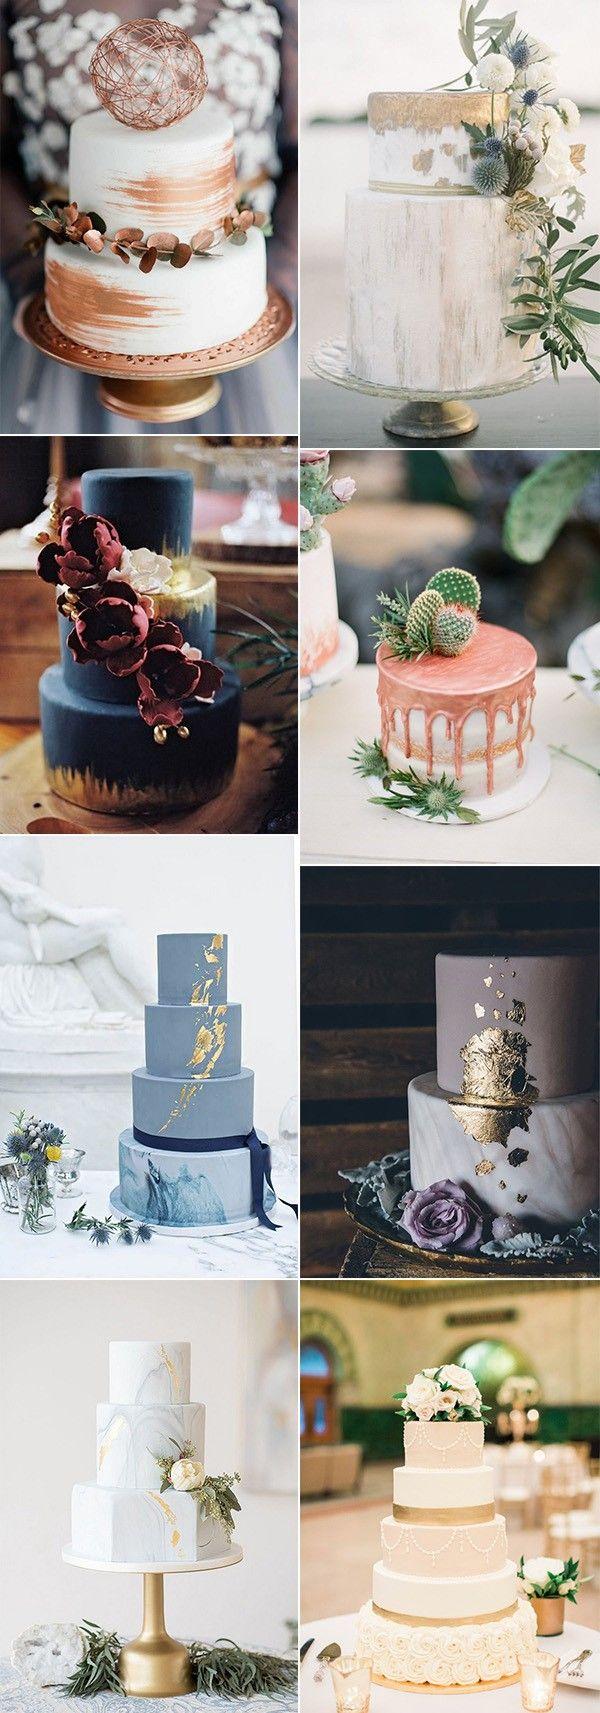 Свадьба - Trending-15 Creative Metallic Wedding Cakes For 2018 - Page 2 Of 2